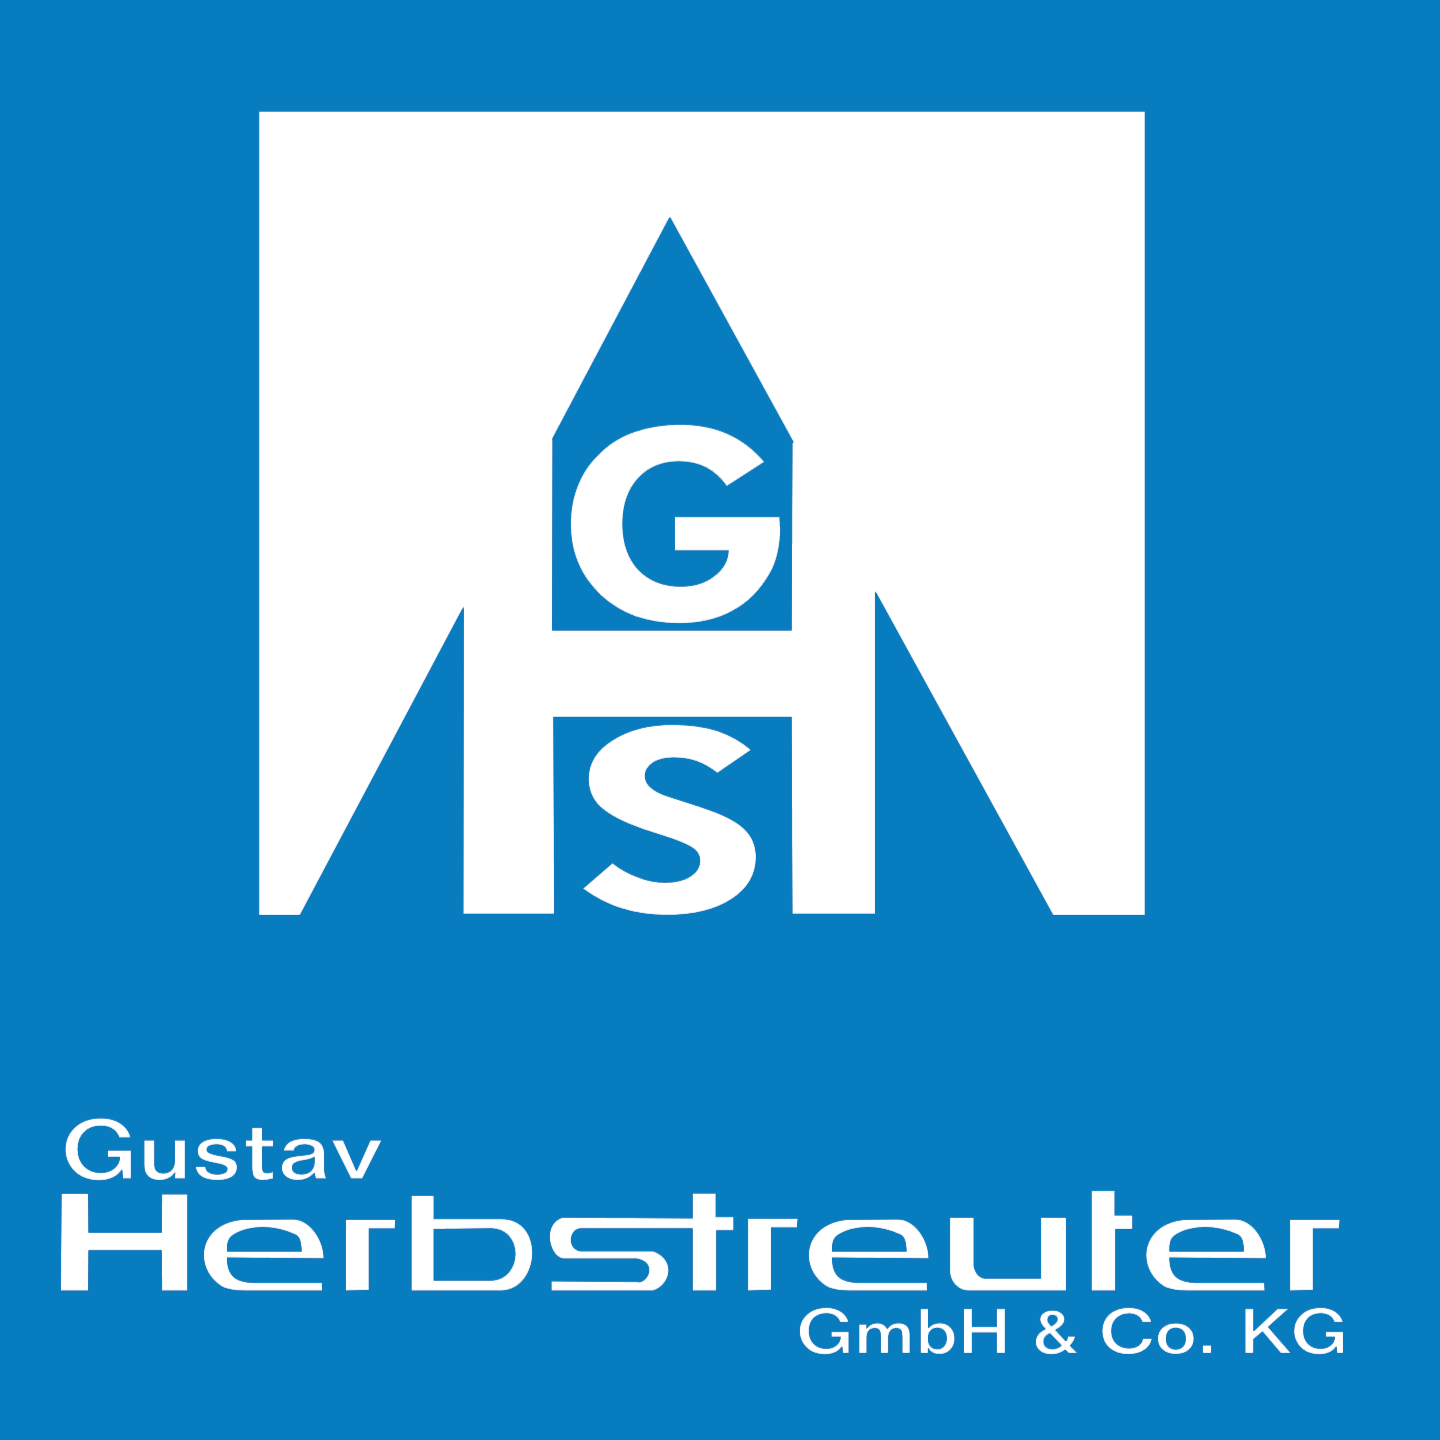 Herbstreuter Gustav Gmbh & Co. Kg